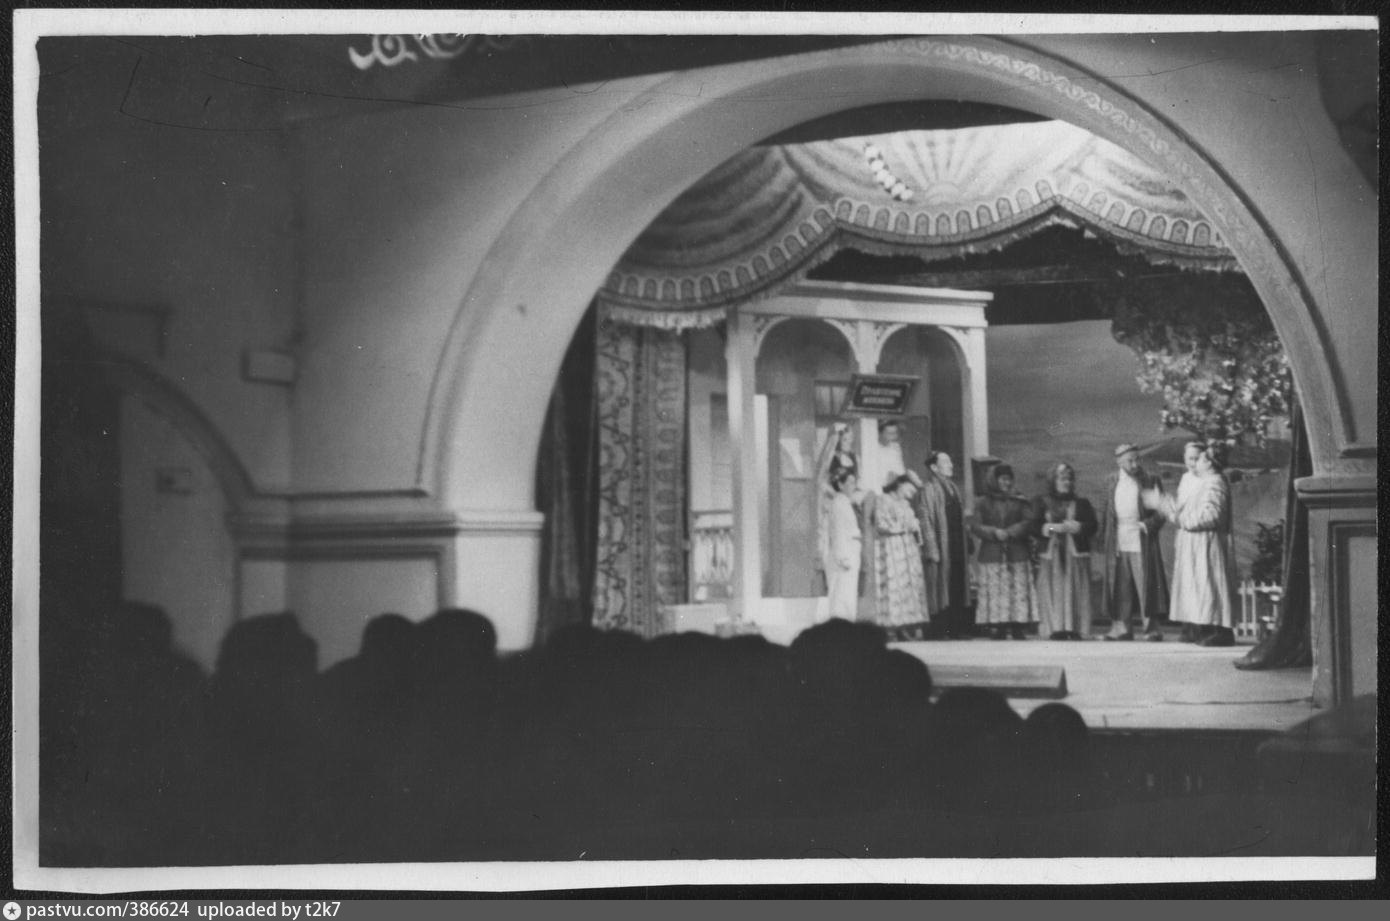 1951 1955. Театр прошлого. Театр в прошлом. Музыкальный театр прошлого. Музыкальный театр прошлое и настоящее.